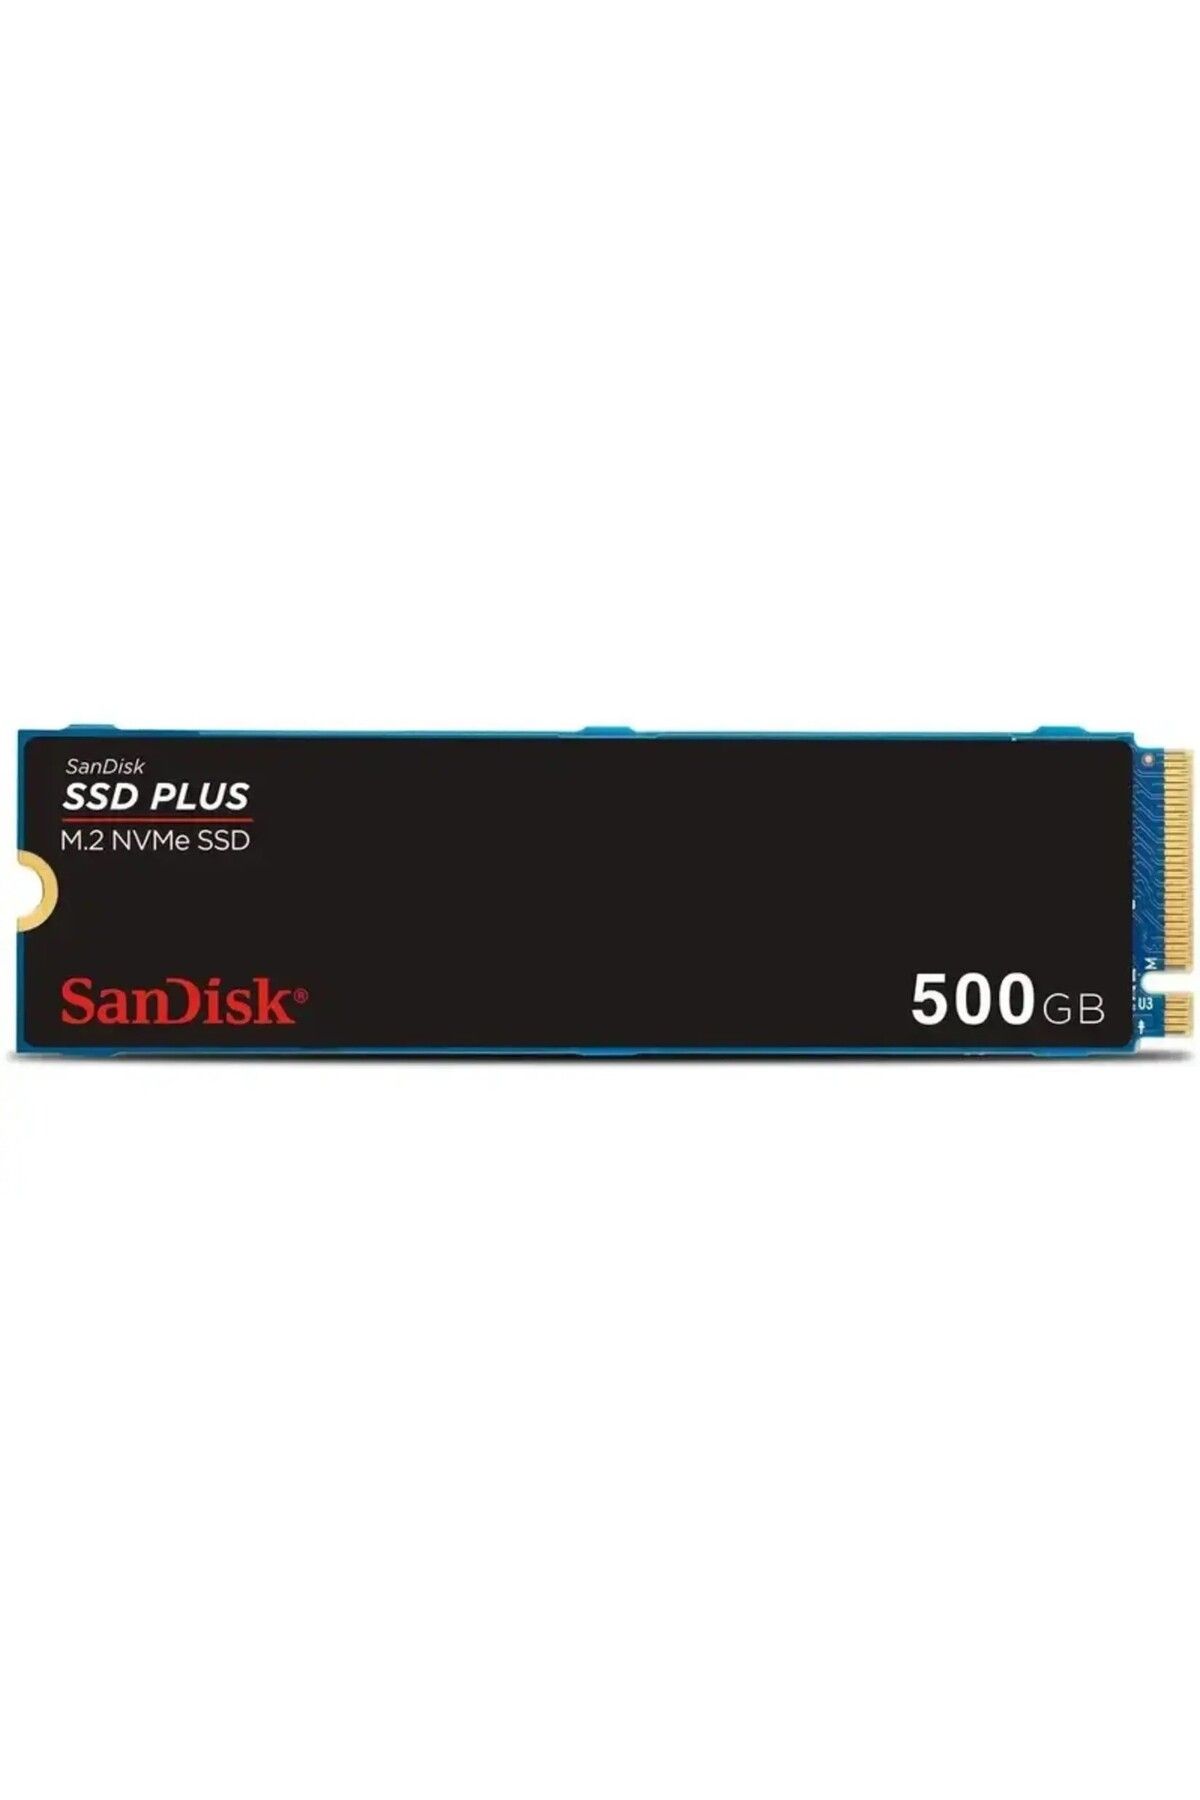 Sandisk SSD PLUS 500GB 2400MB-1500MB/s M.2 PCIe Gen 3.0 NVMe SSD SDSSDA3N-500G-G26